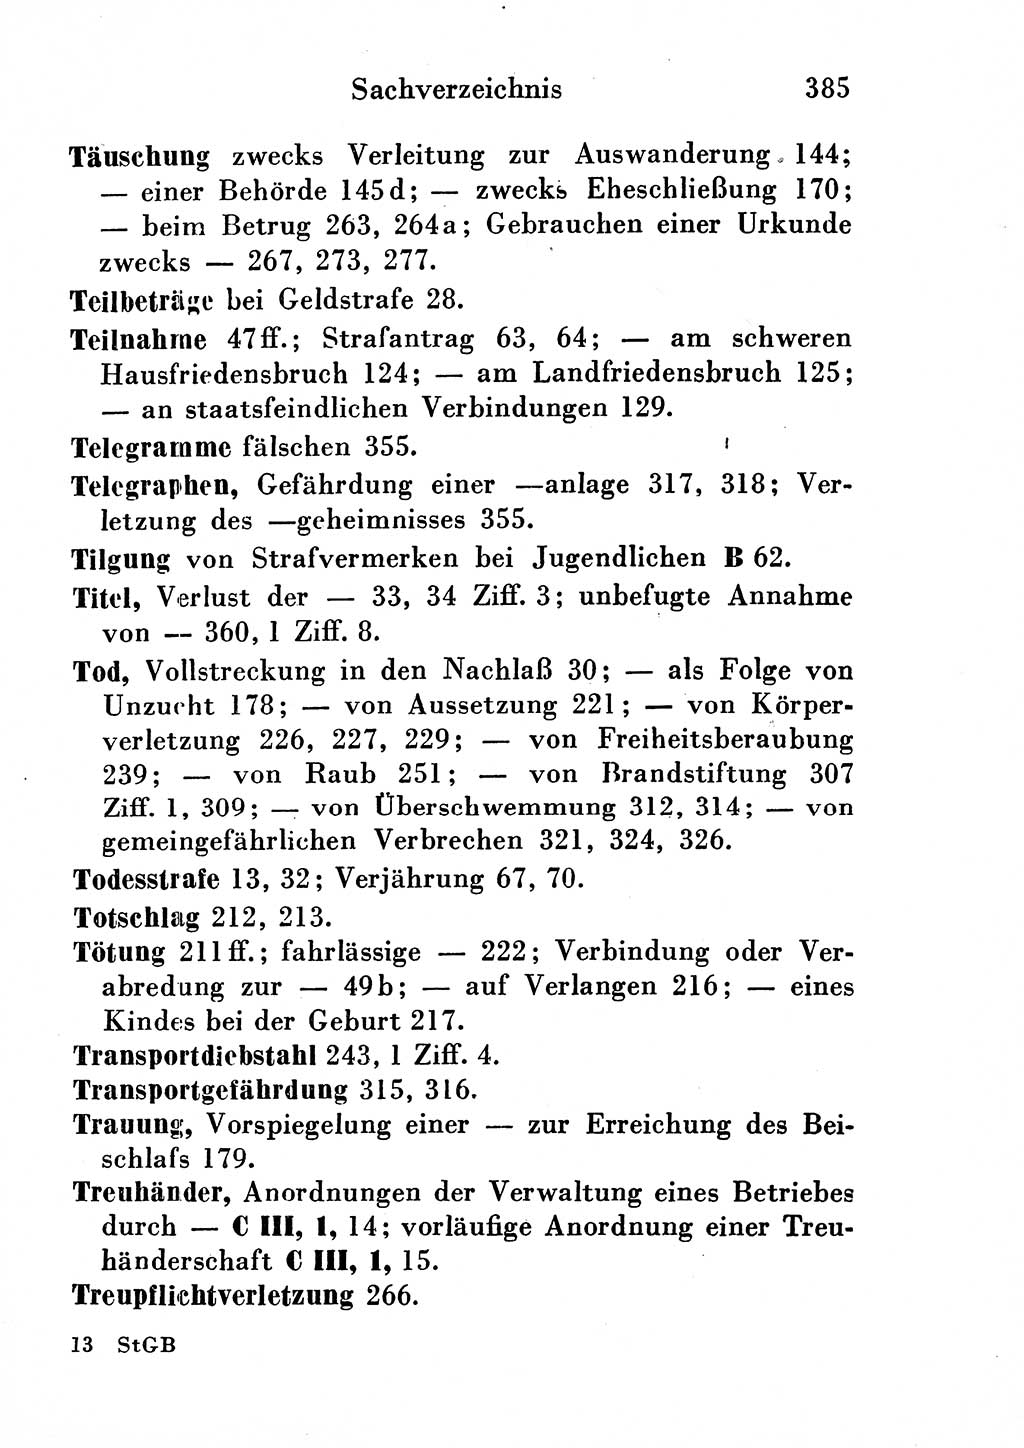 Strafgesetzbuch (StGB) und andere Strafgesetze [Deutsche Demokratische Republik (DDR)] 1954, Seite 385 (StGB Strafges. DDR 1954, S. 385)